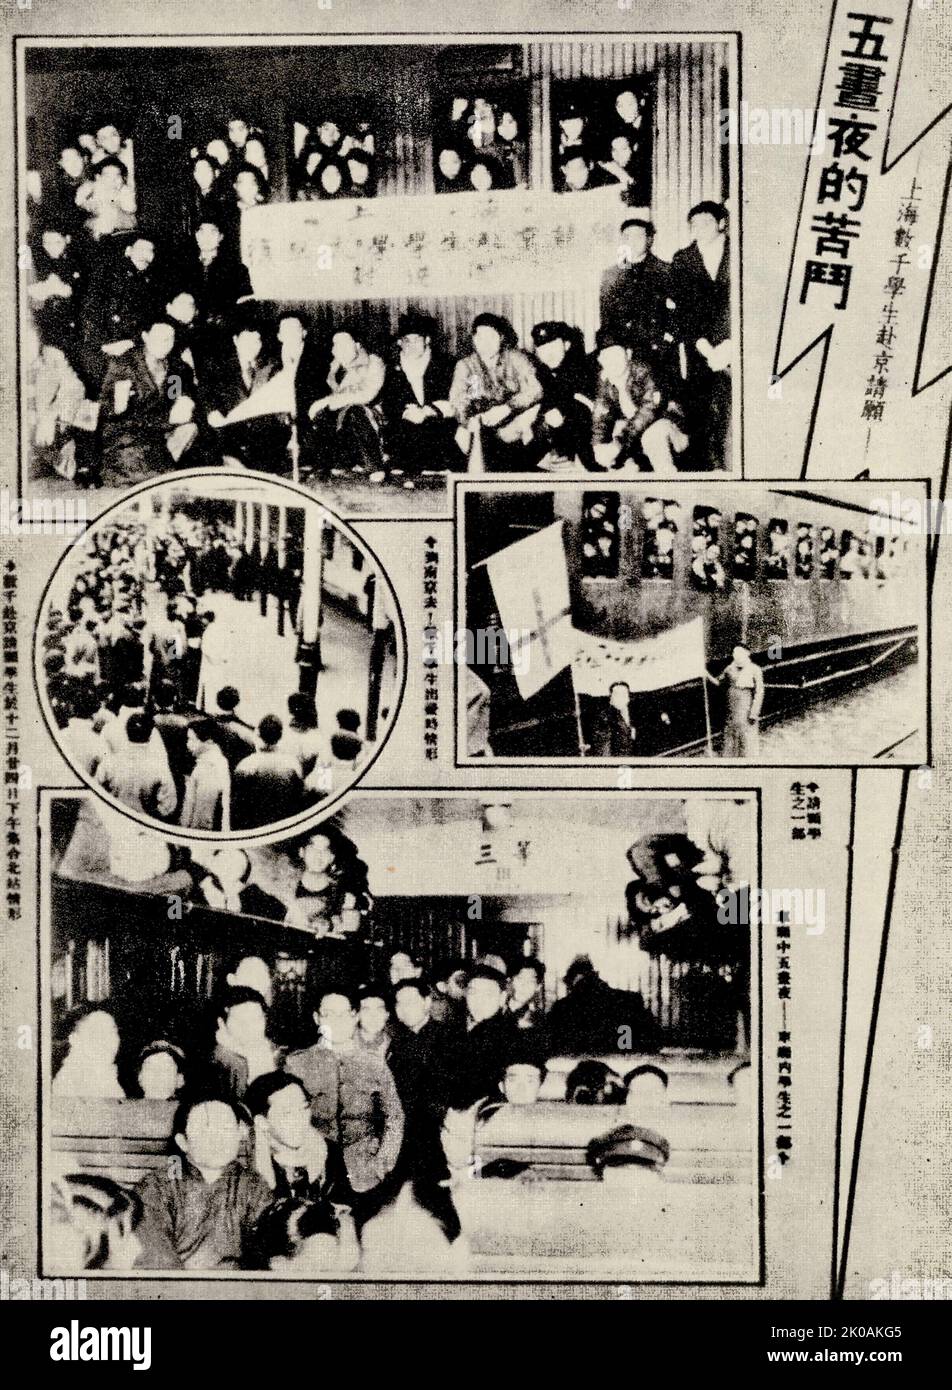 Sur 24 décembre, deux jours après avoir été gêné par la gare du Nord, les étudiants de Shanghai ont conduit leurs trains à Nanjing pour présenter une pétition. Ils demandent des actions patriotiques. Banque D'Images